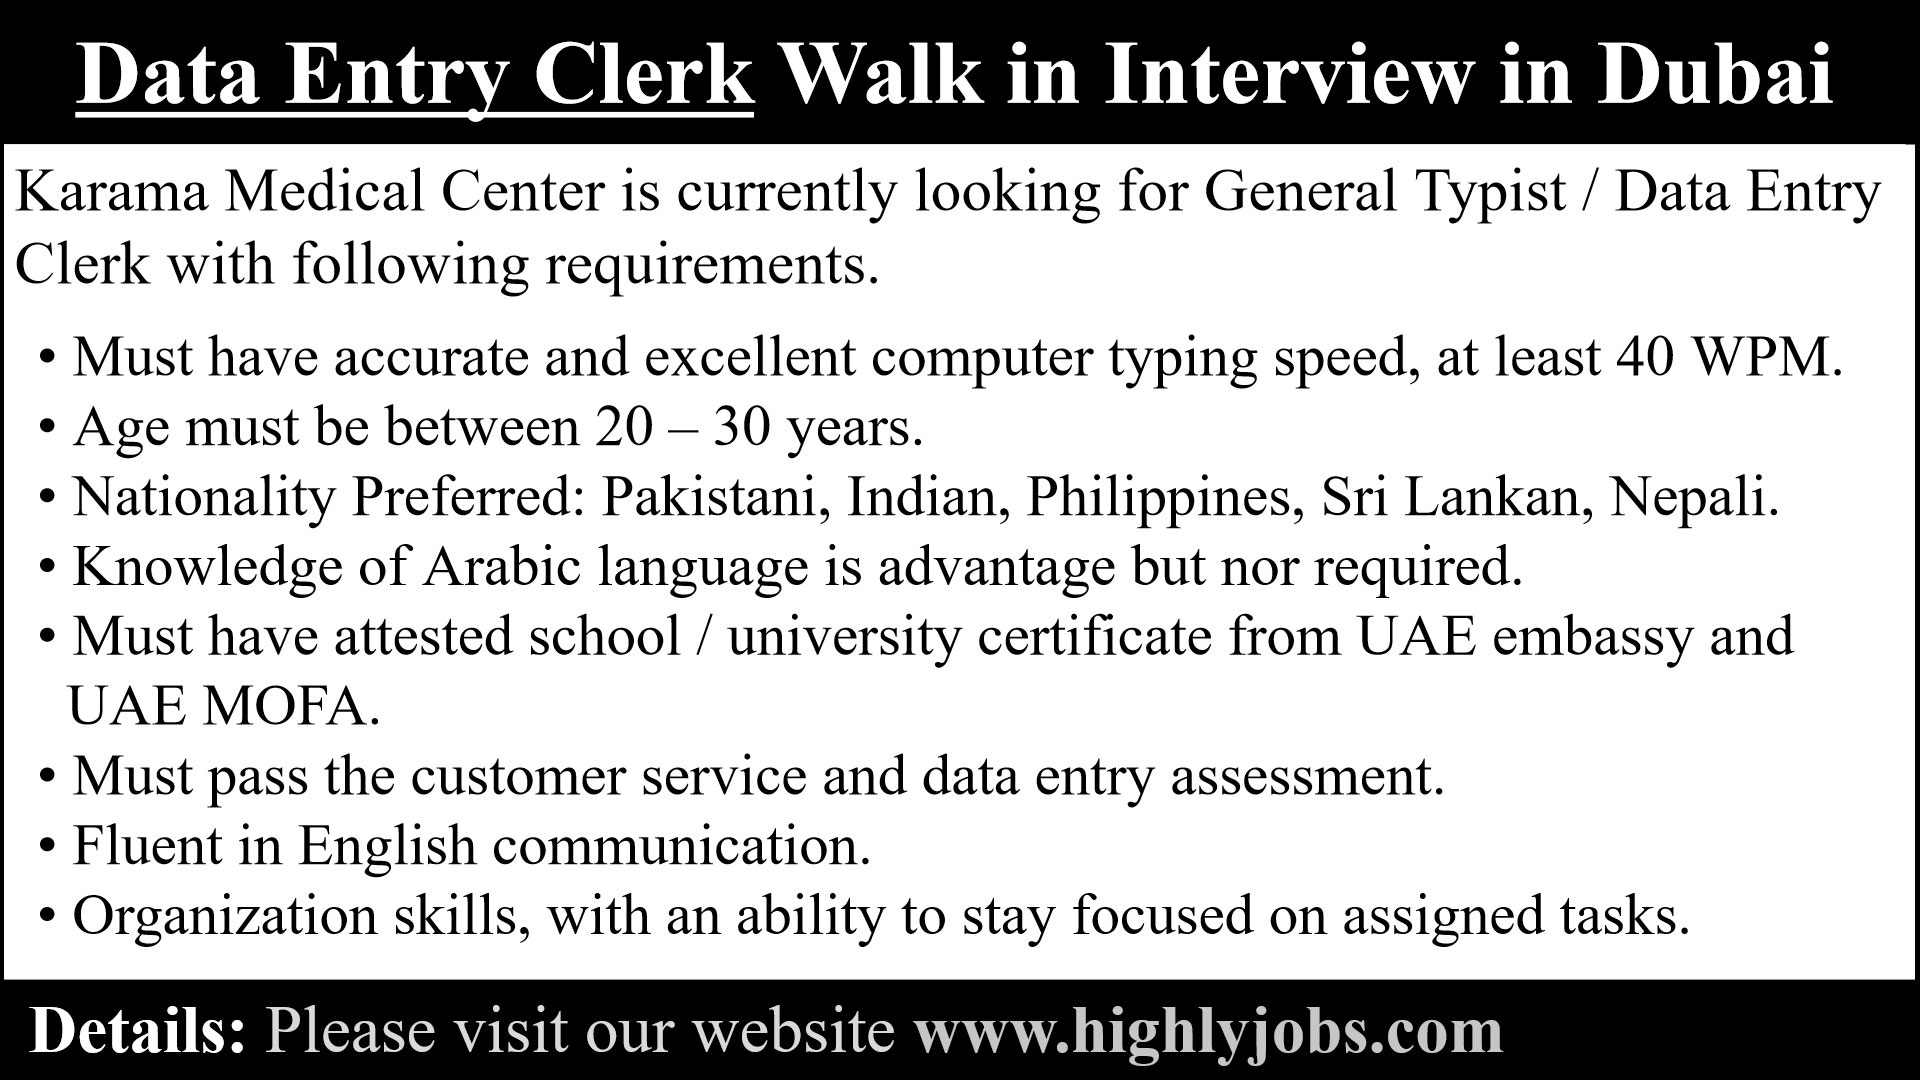 Data Entry Clerk Walk in Interview in Dubai